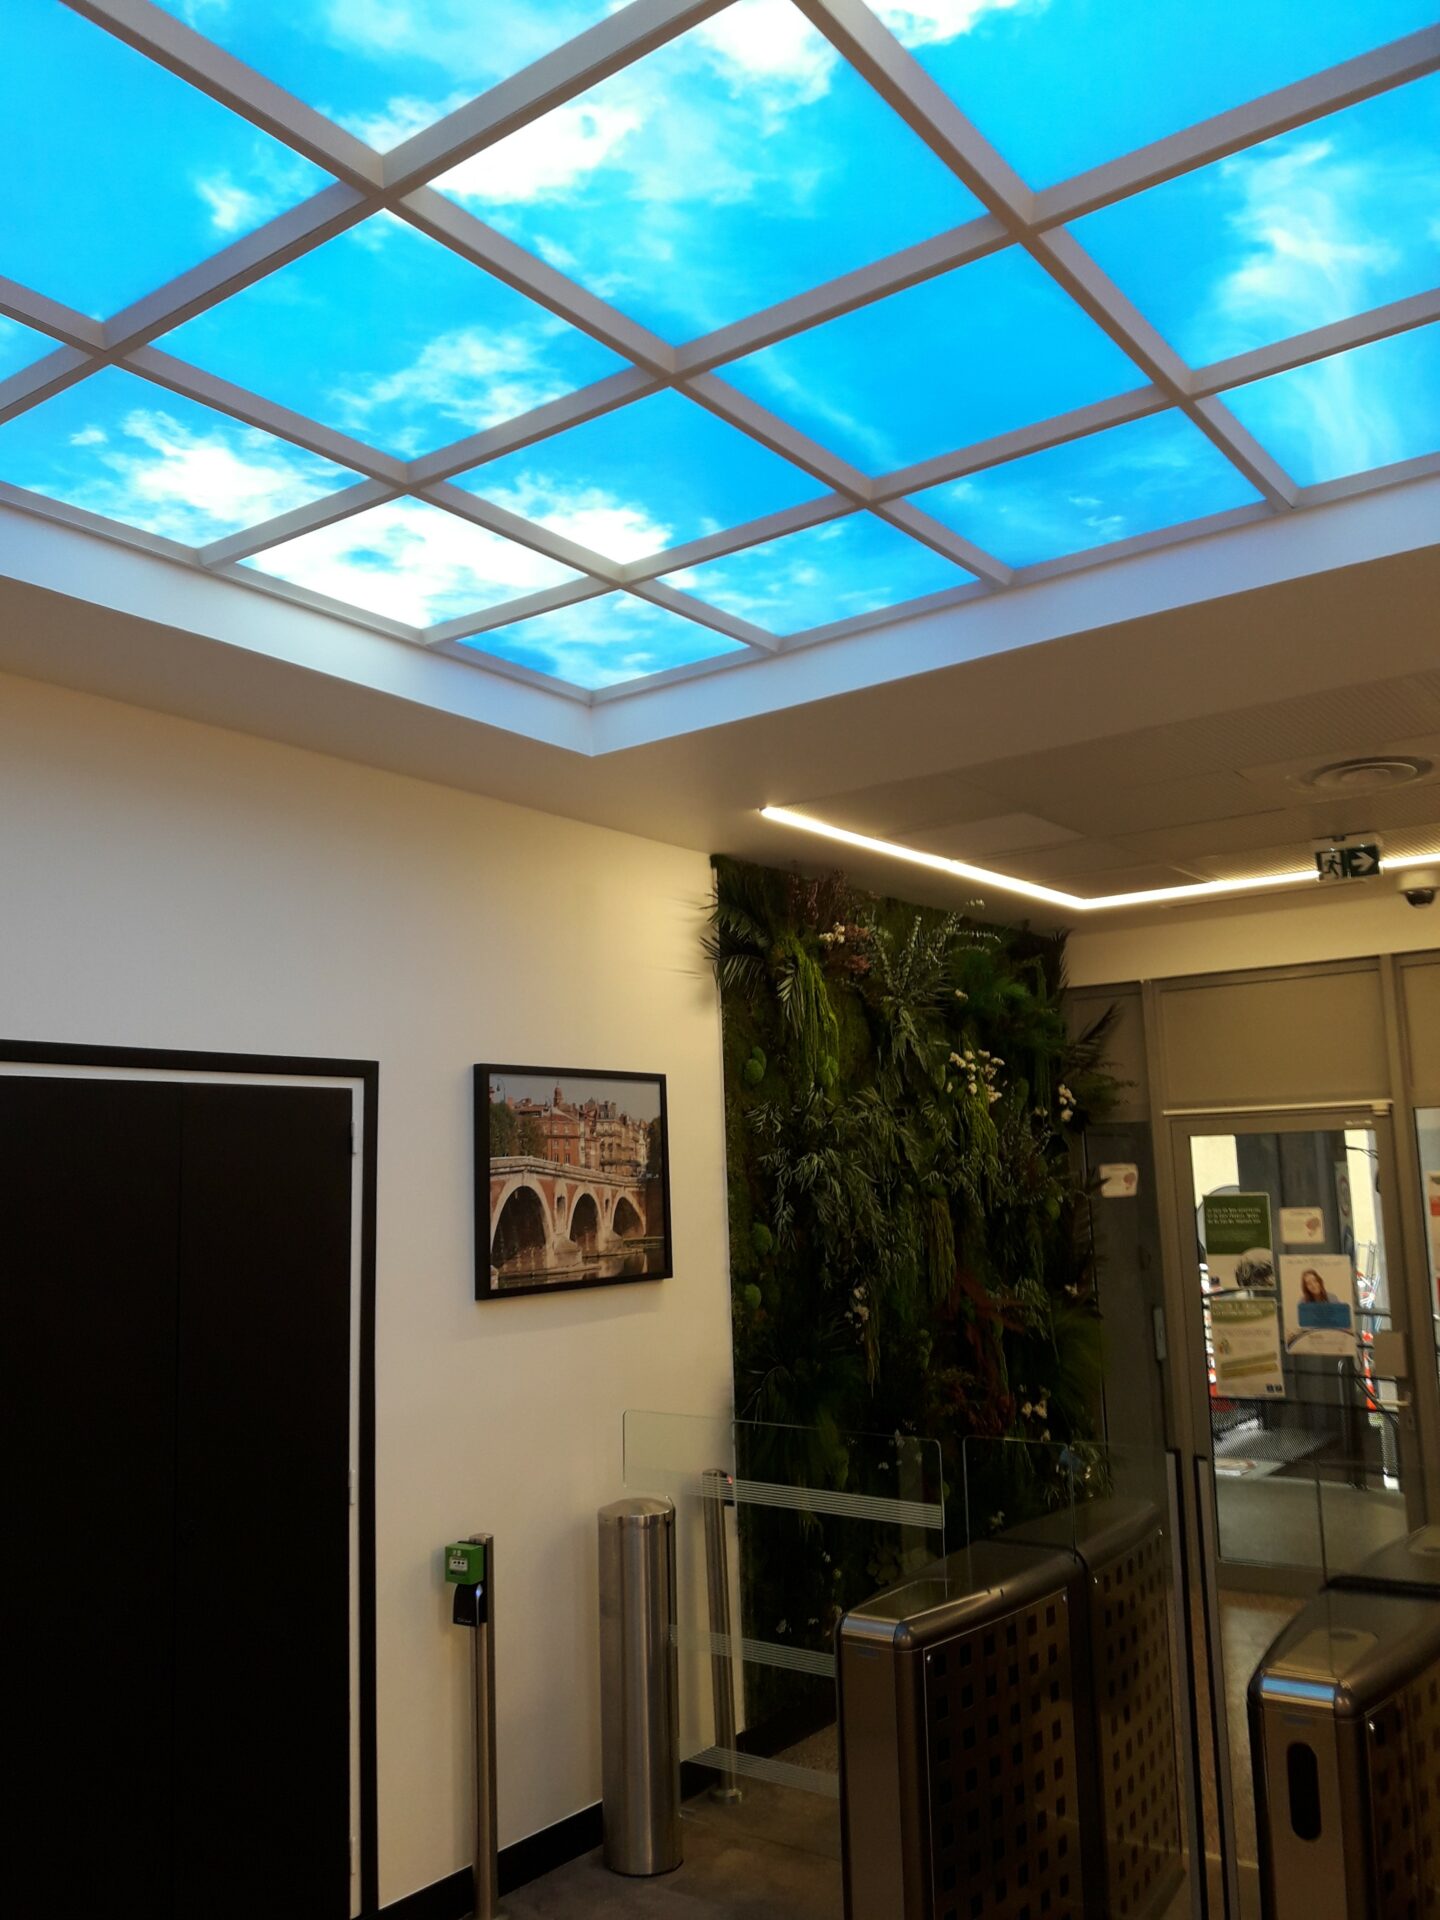 Hall d'accueil plafonds plafond lumineux cumulux ciel LED encastré dans le faux plafond